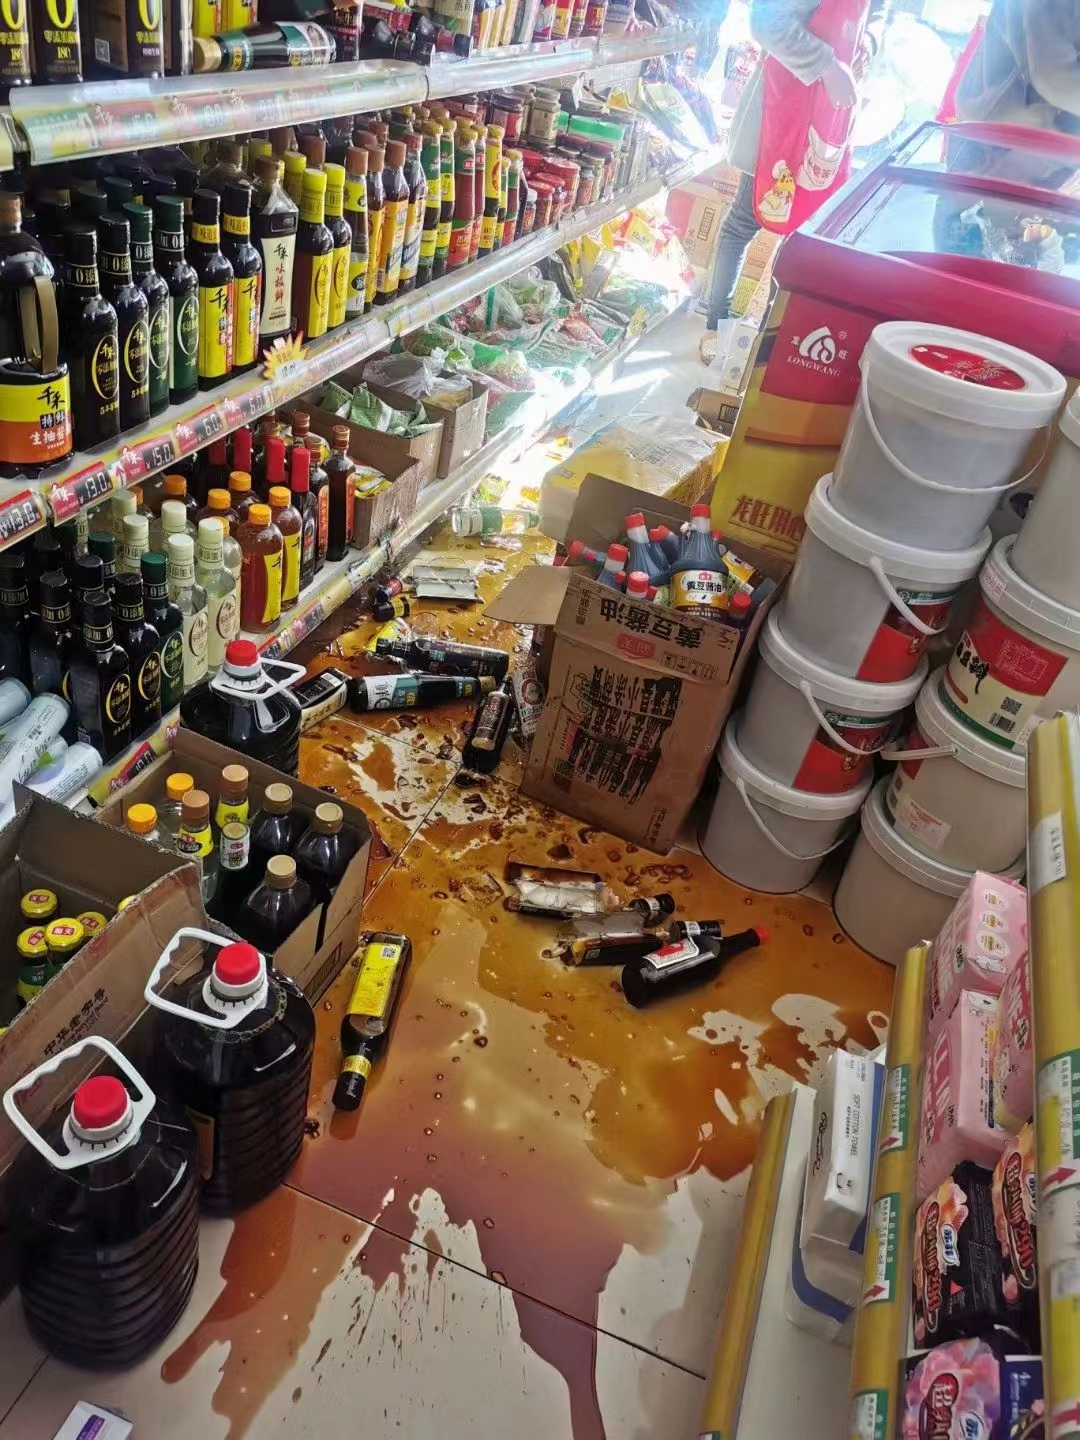 晃动得厉害像坐船四川汉源48级地震超市货架商品被震落